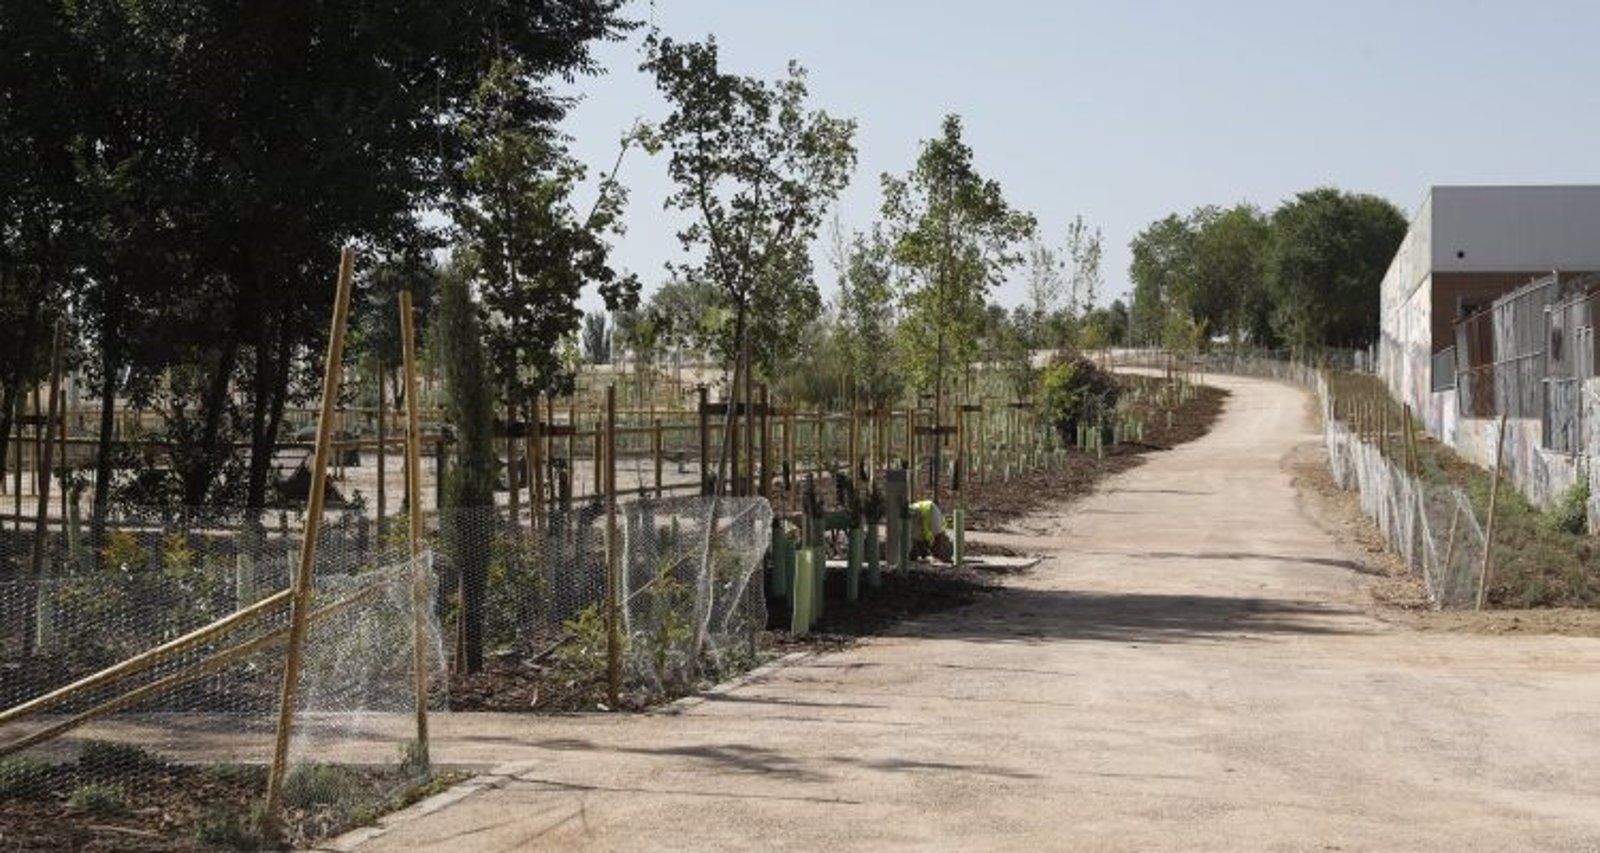 La capital estrena un nuevo parque semiforestal de seis hectáreas en San Blas-Canillejas